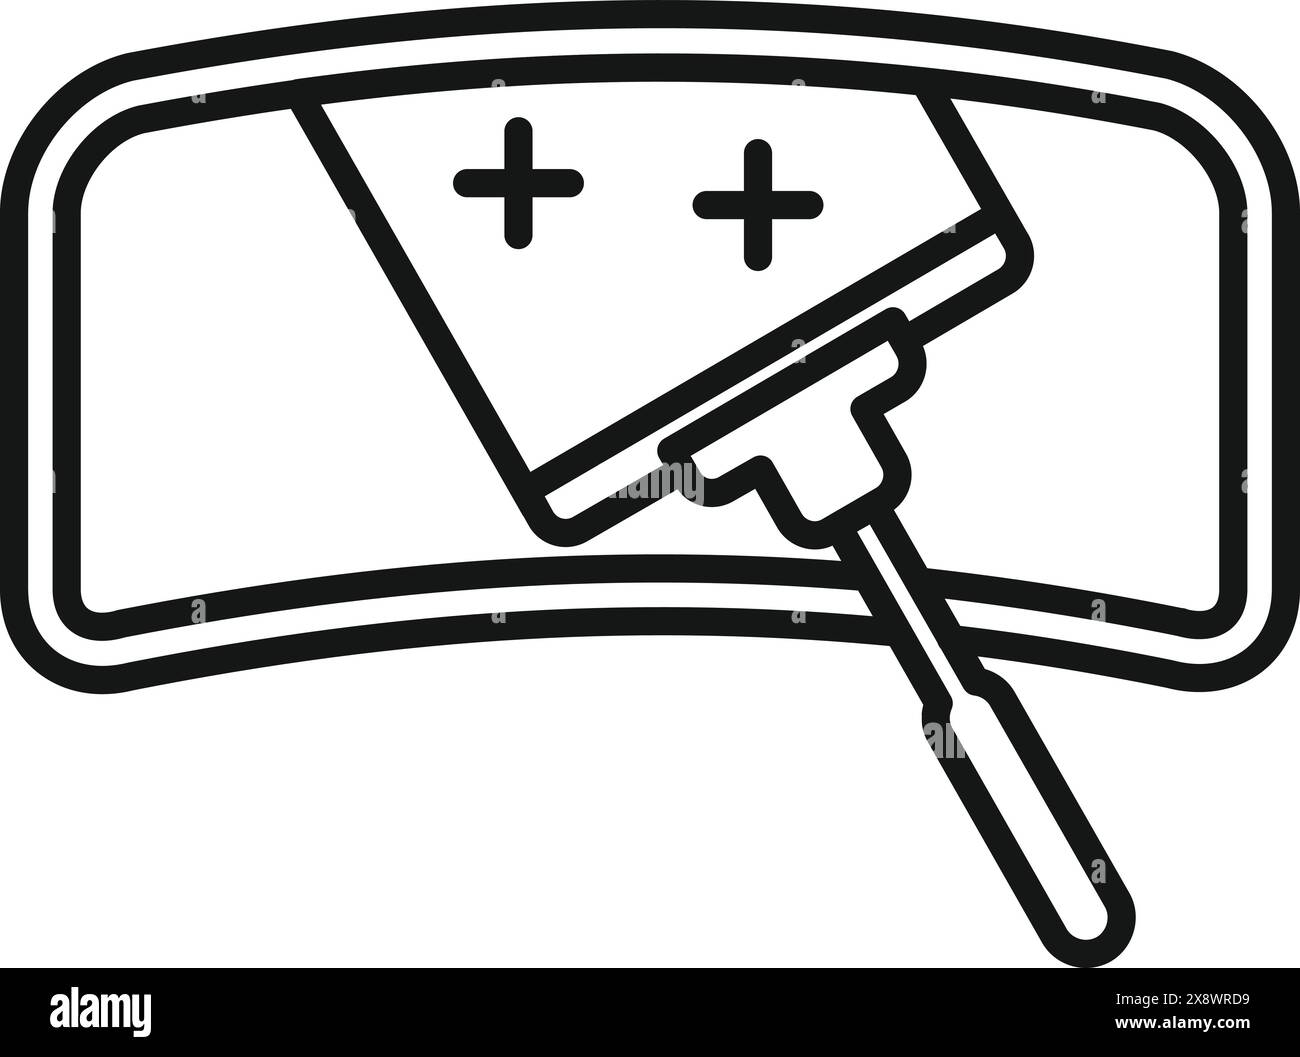 Icône représentant un dessin au trait noir et blanc représentant le pare-brise d'une voiture avec balais d'essuie-glace Illustration de Vecteur